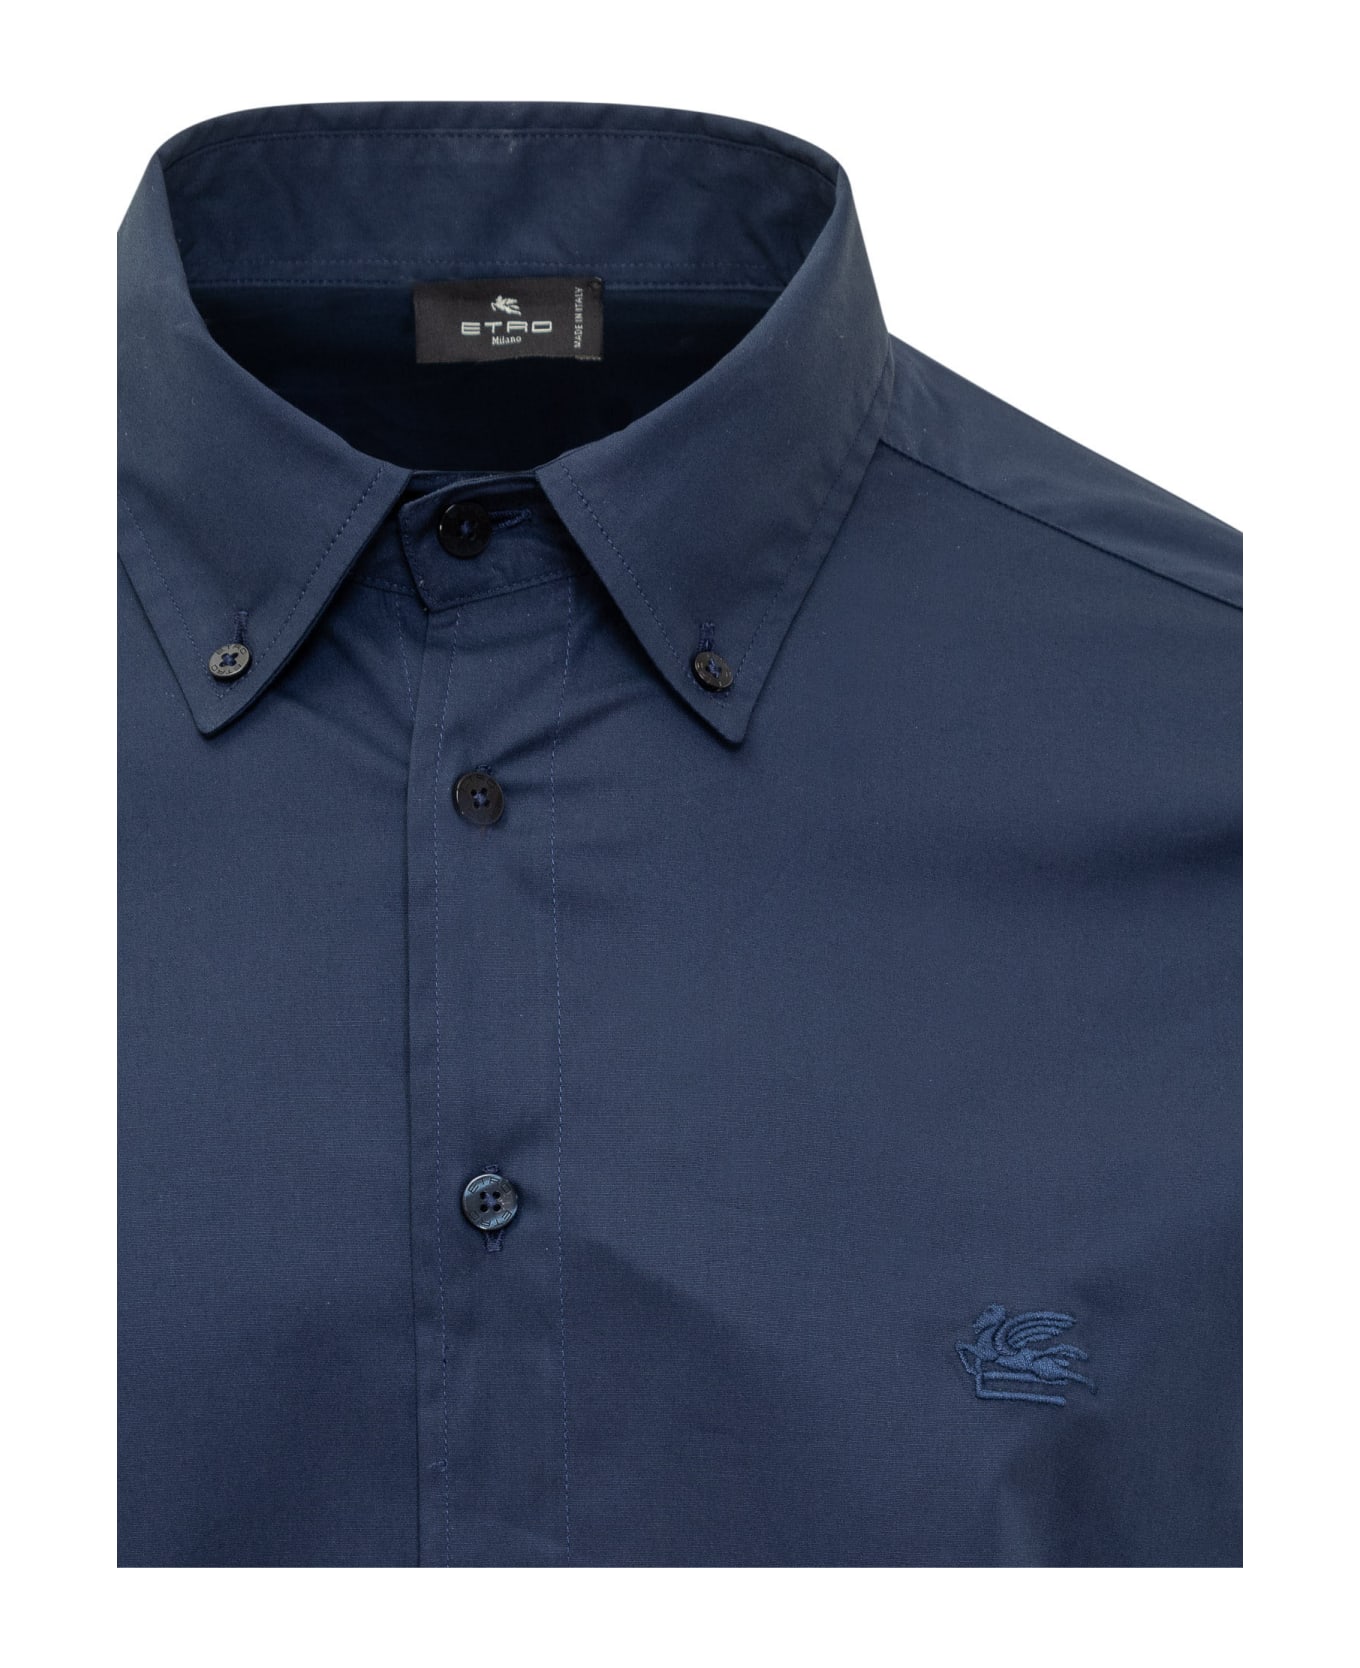 Etro Cotton Shirt With Logo - BLU SCURO